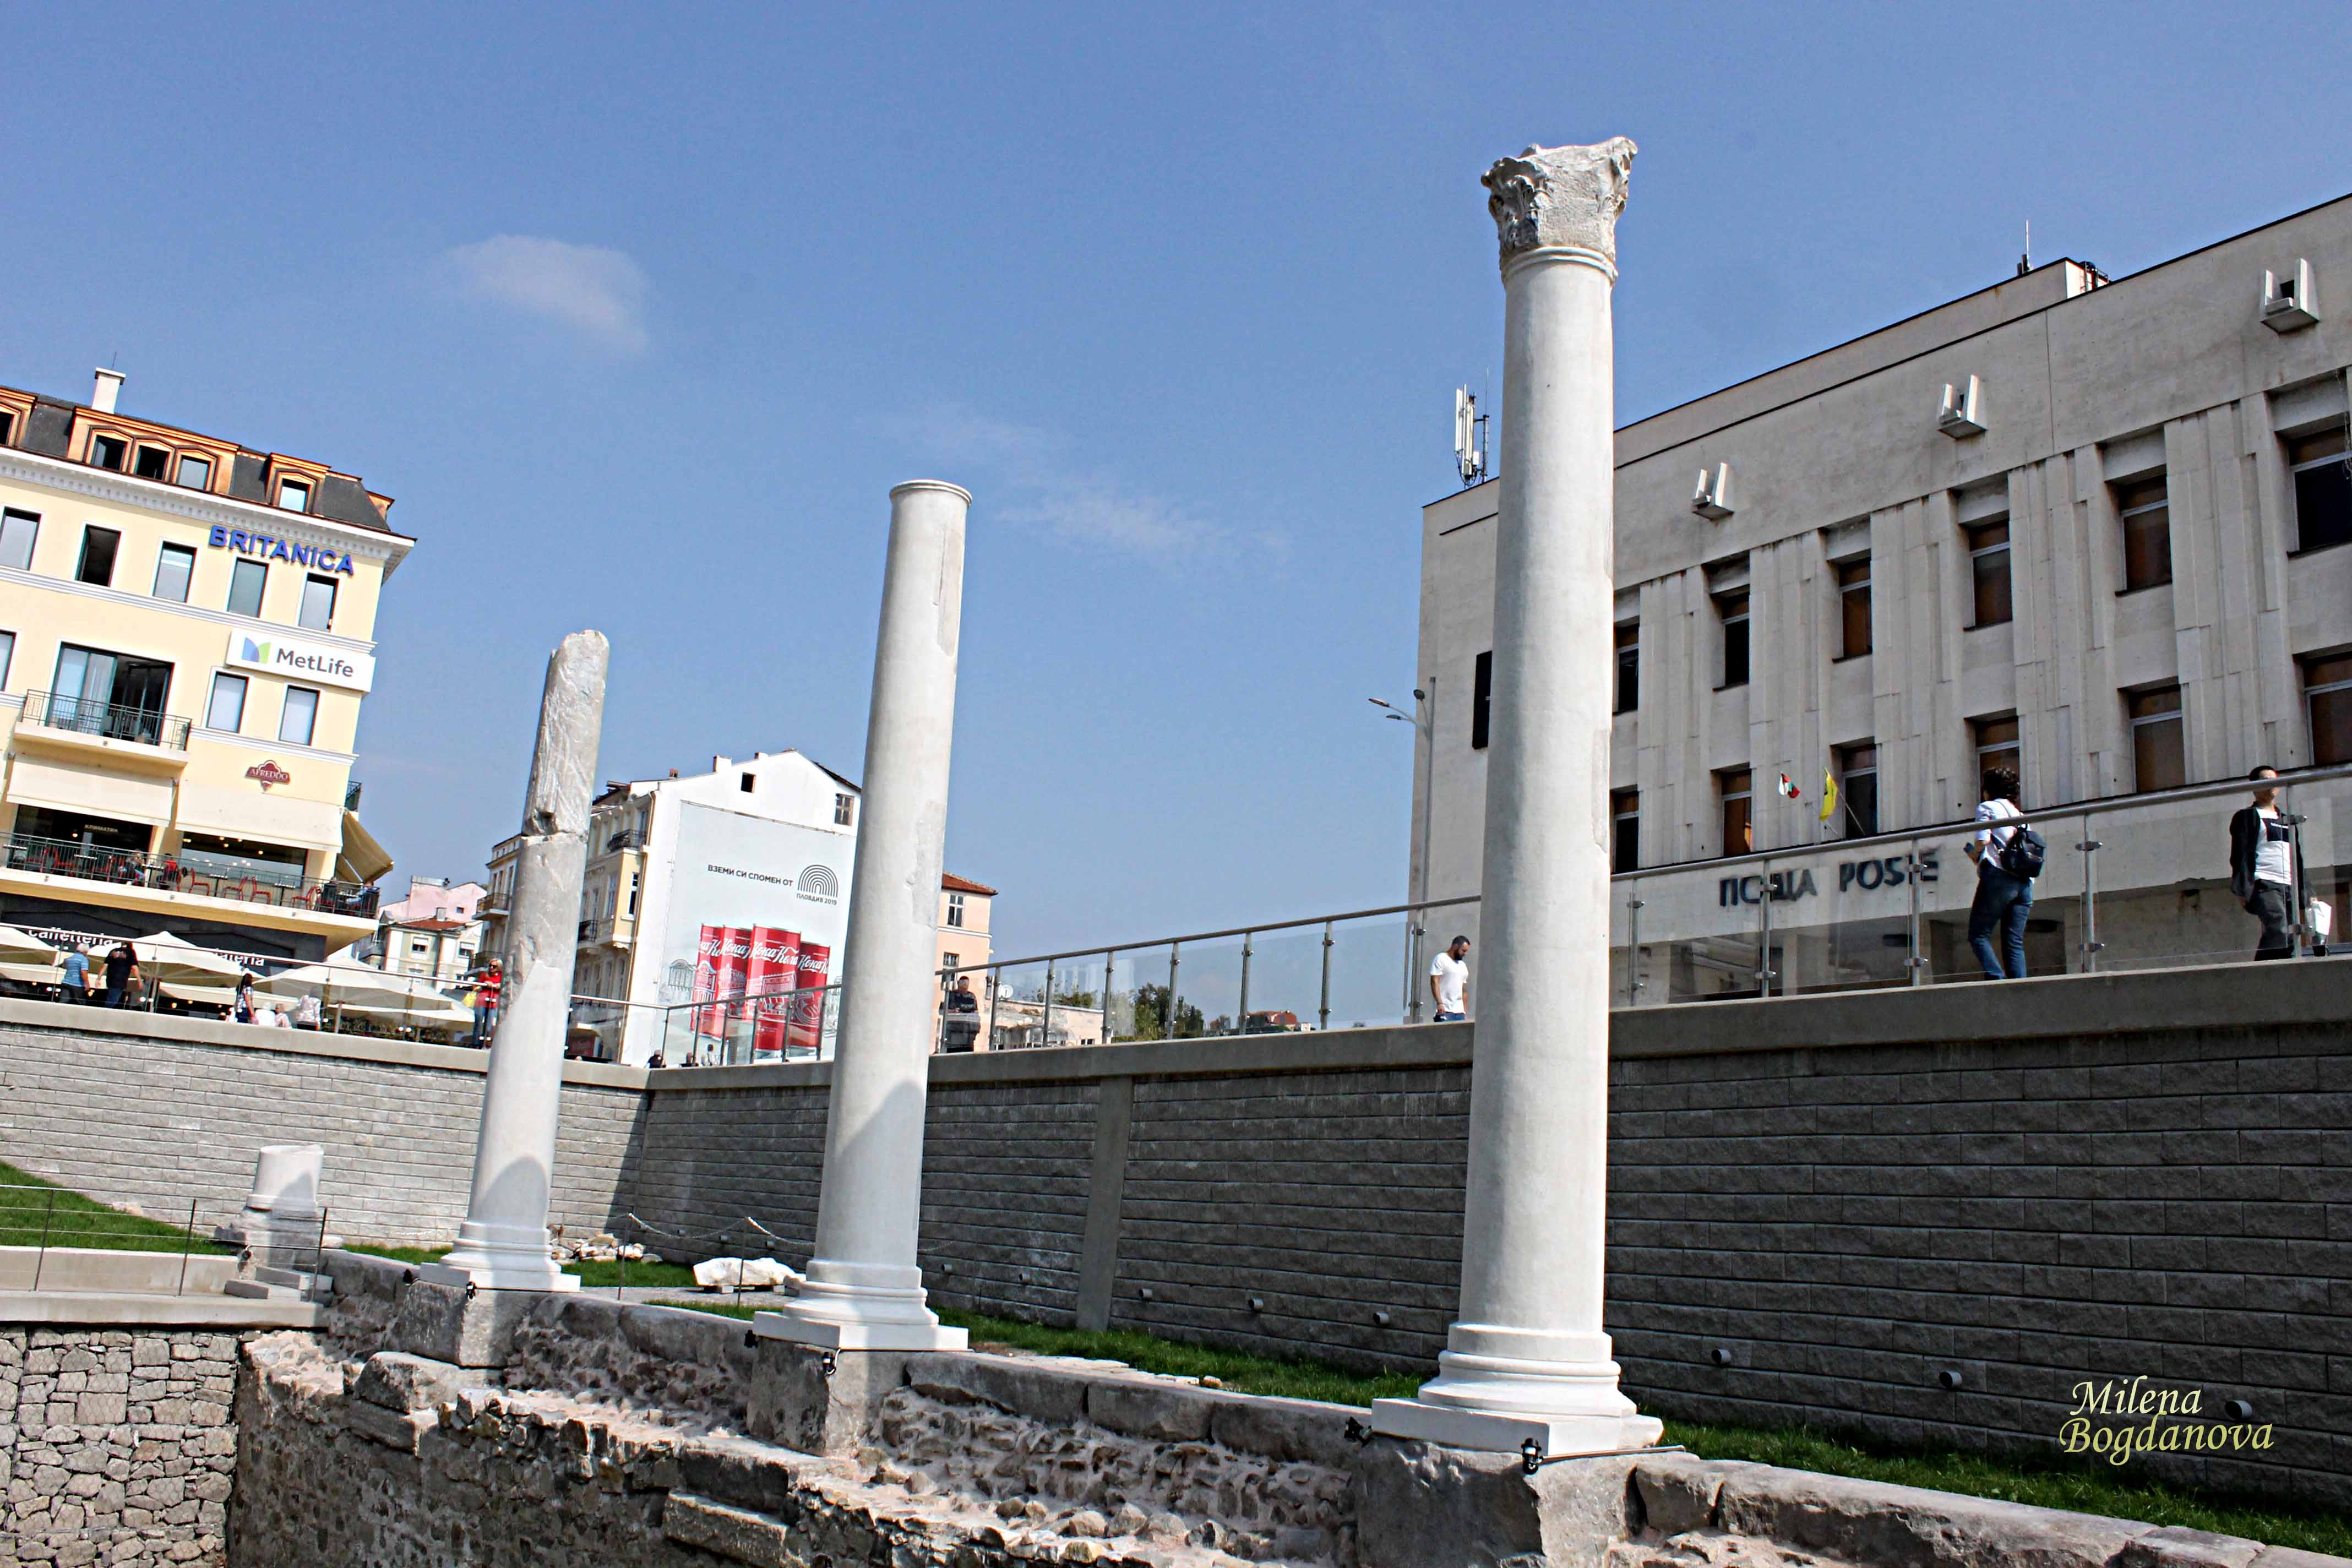 Пловдив: Действащ реновиран площад без Акт 16